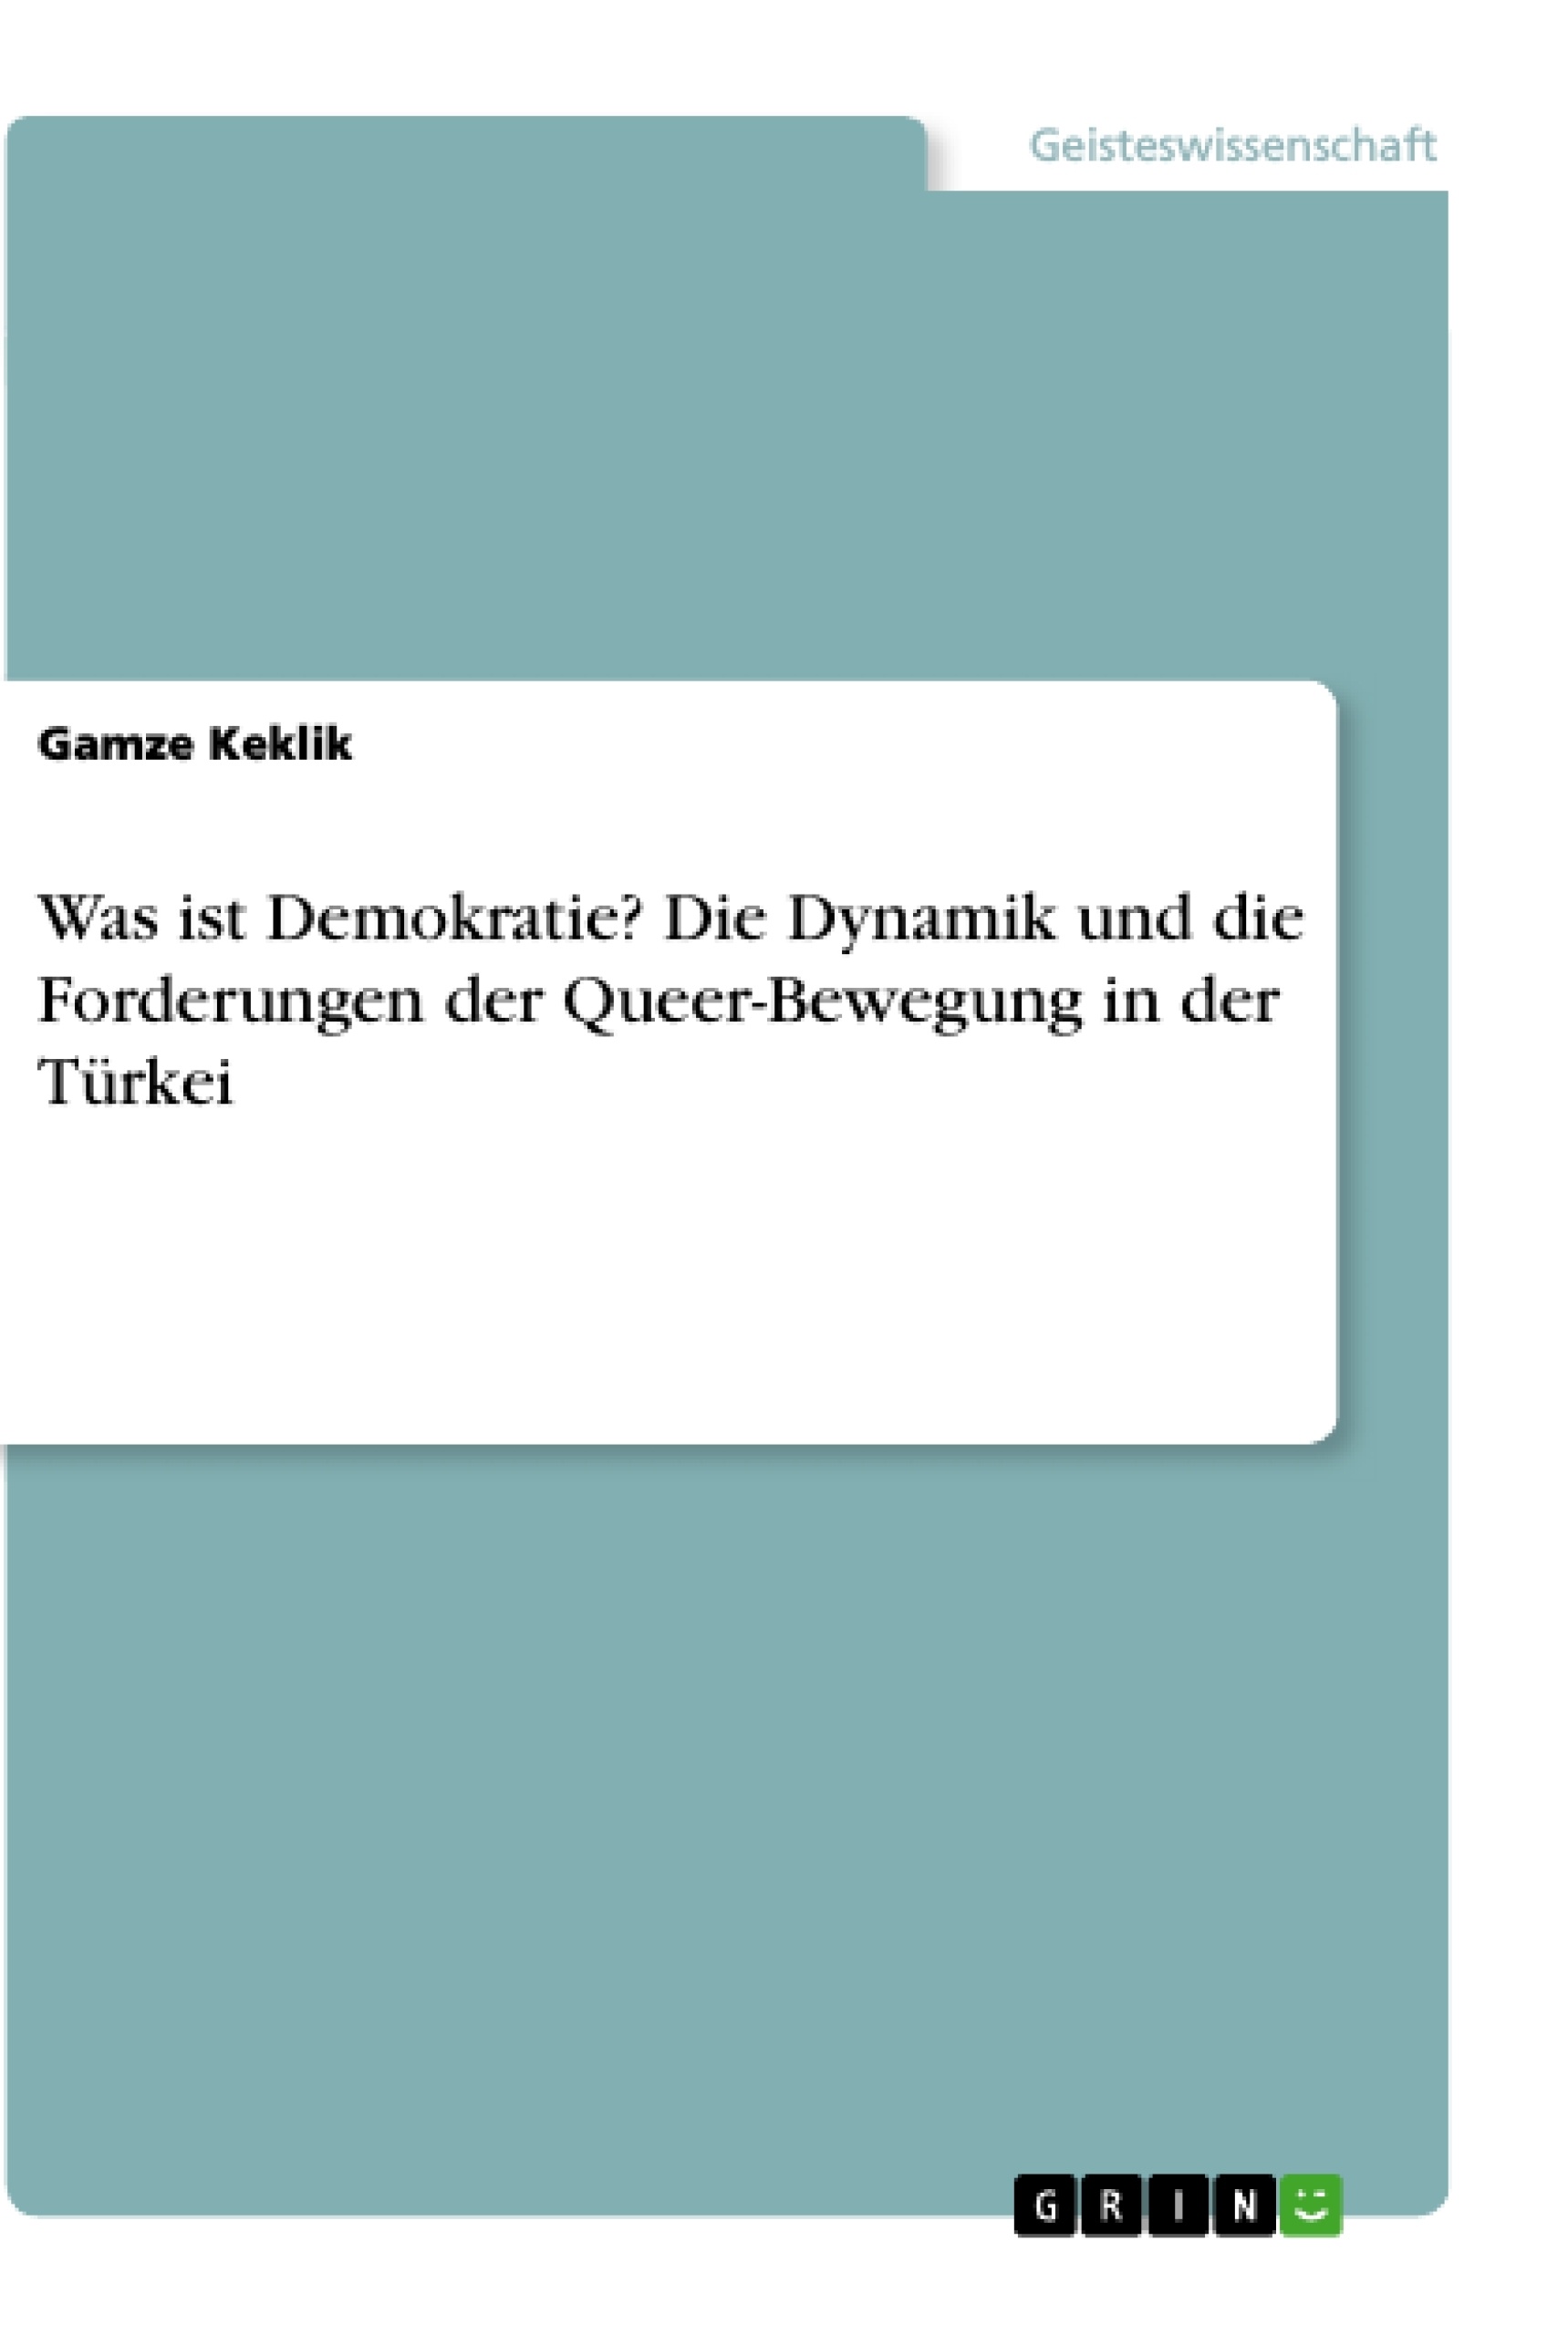 Titel: Was ist Demokratie? Die Dynamik und die Forderungen der Queer-Bewegung in der Türkei